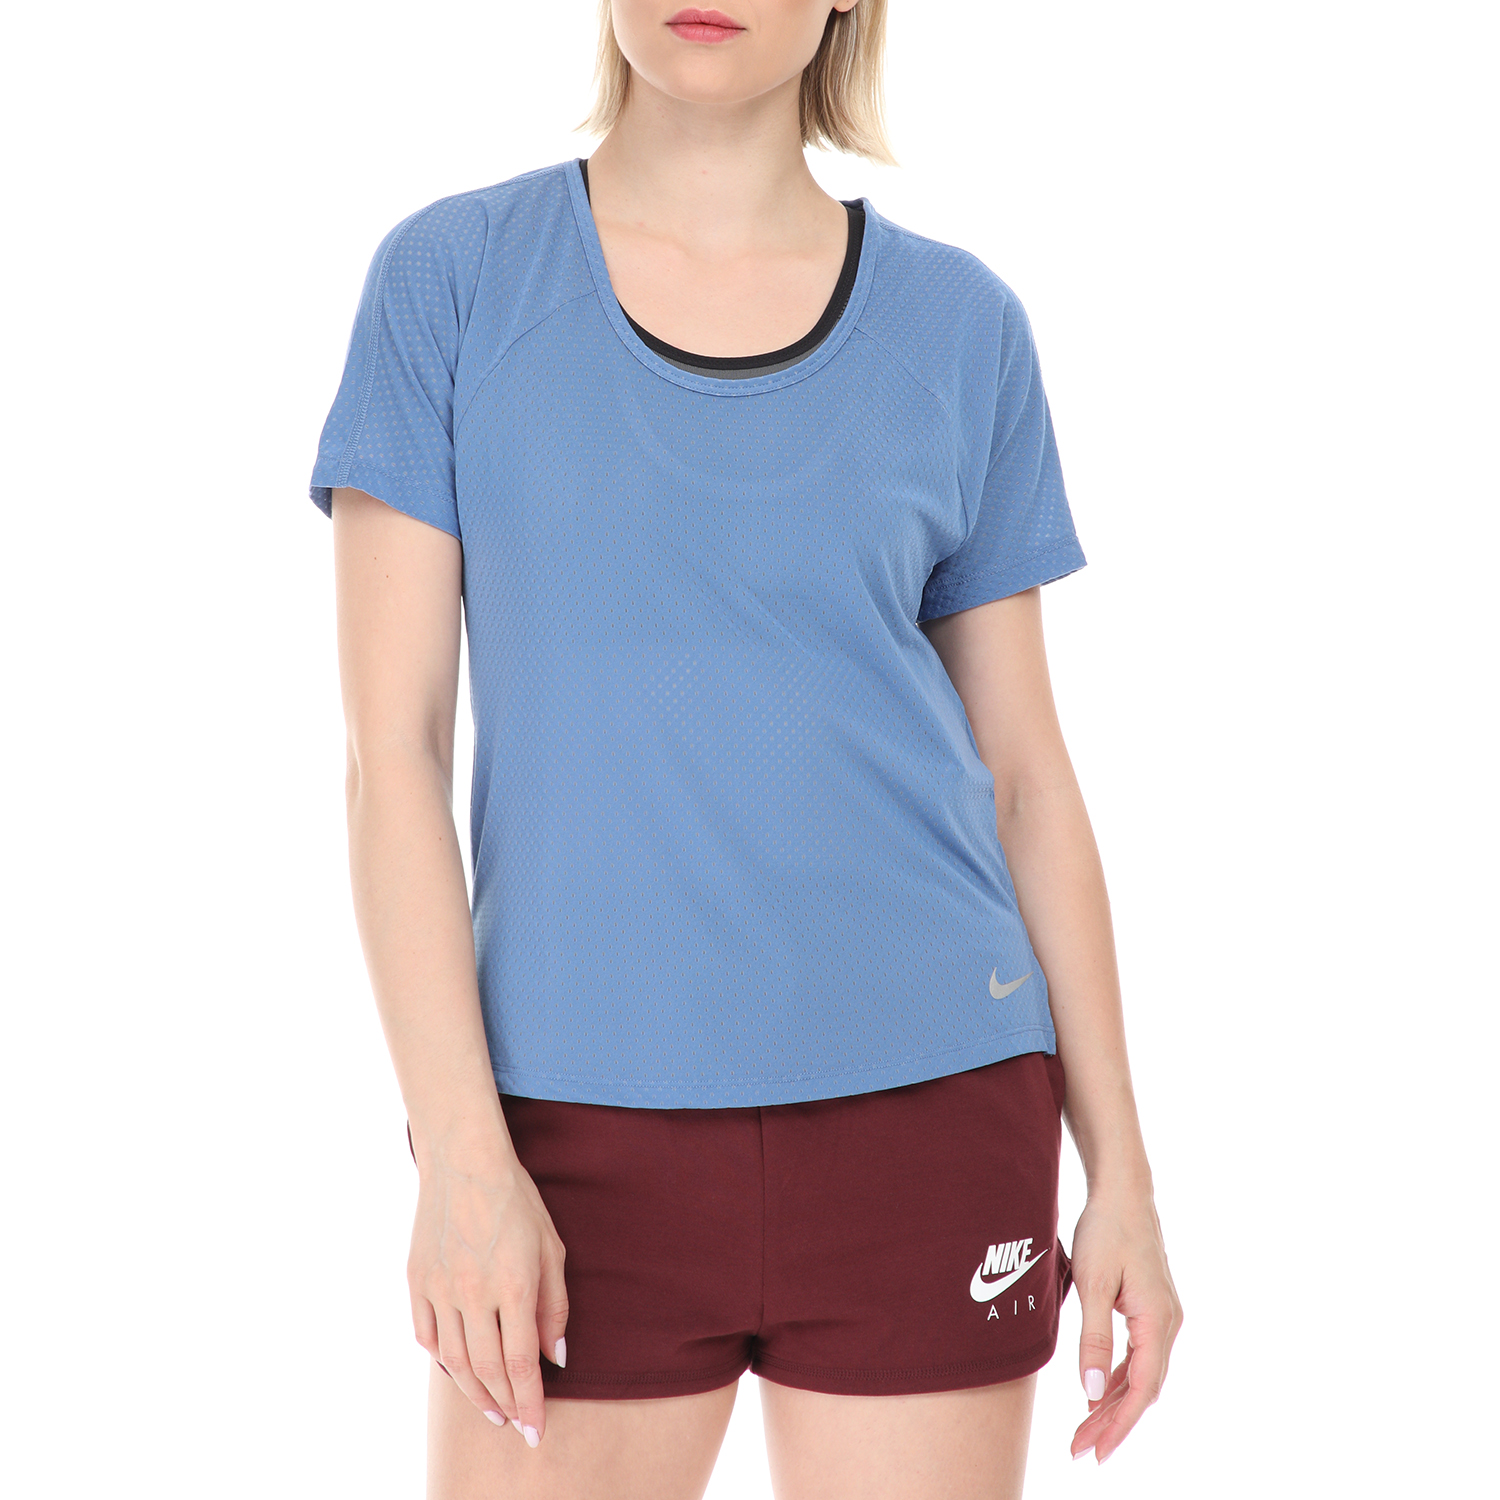 Γυναικεία/Ρούχα/Αθλητικά/T-shirt-Τοπ NIKE - Γυναικείο αθλητικό top NIKE BREATHE MILER μπλε